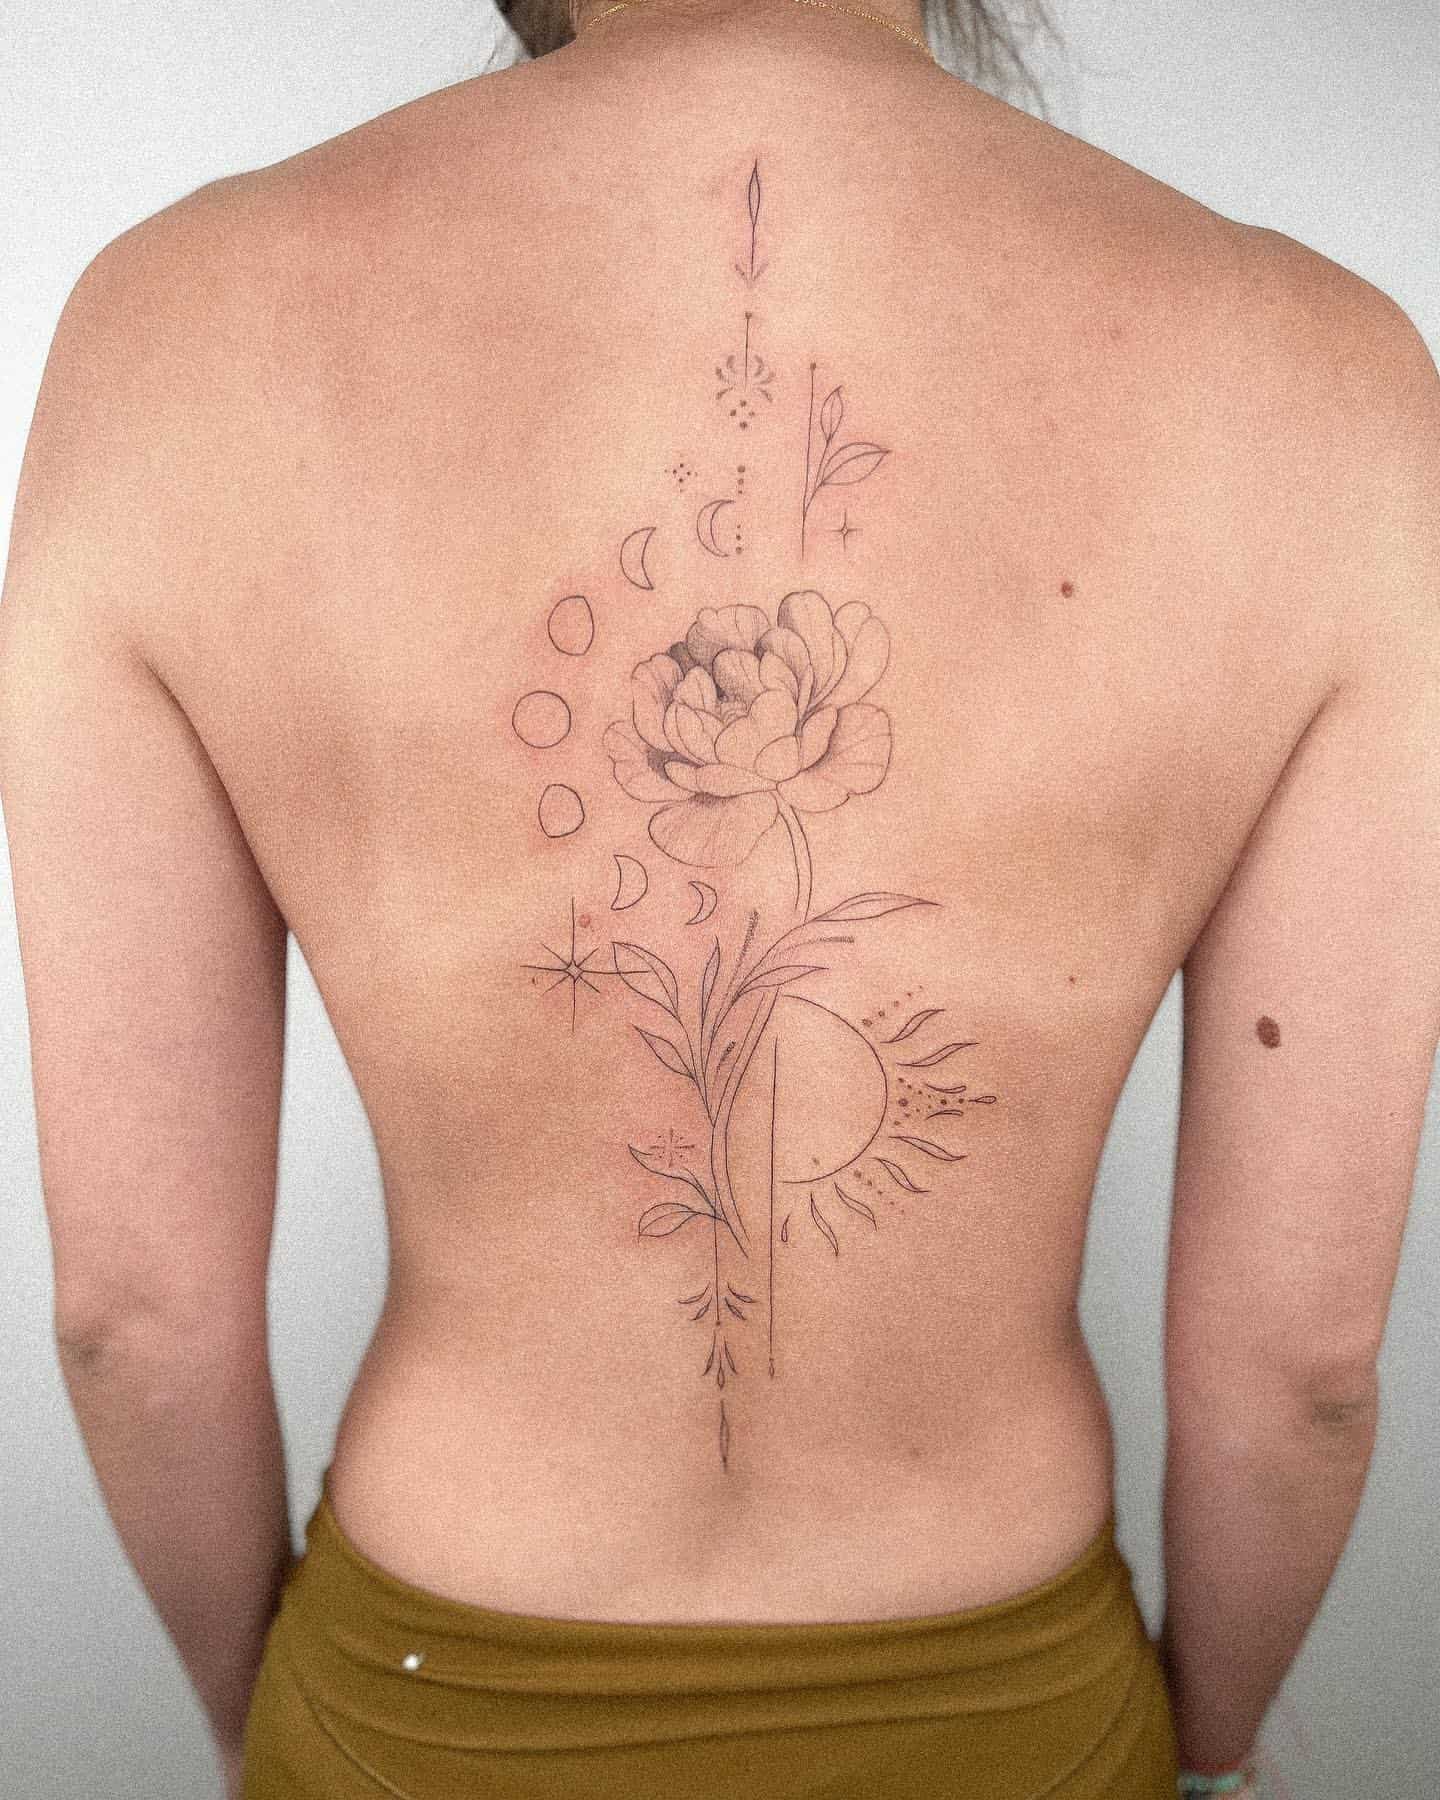 Tattoolanka - Minimalist Spine Tattoo Design with custom... | Facebook